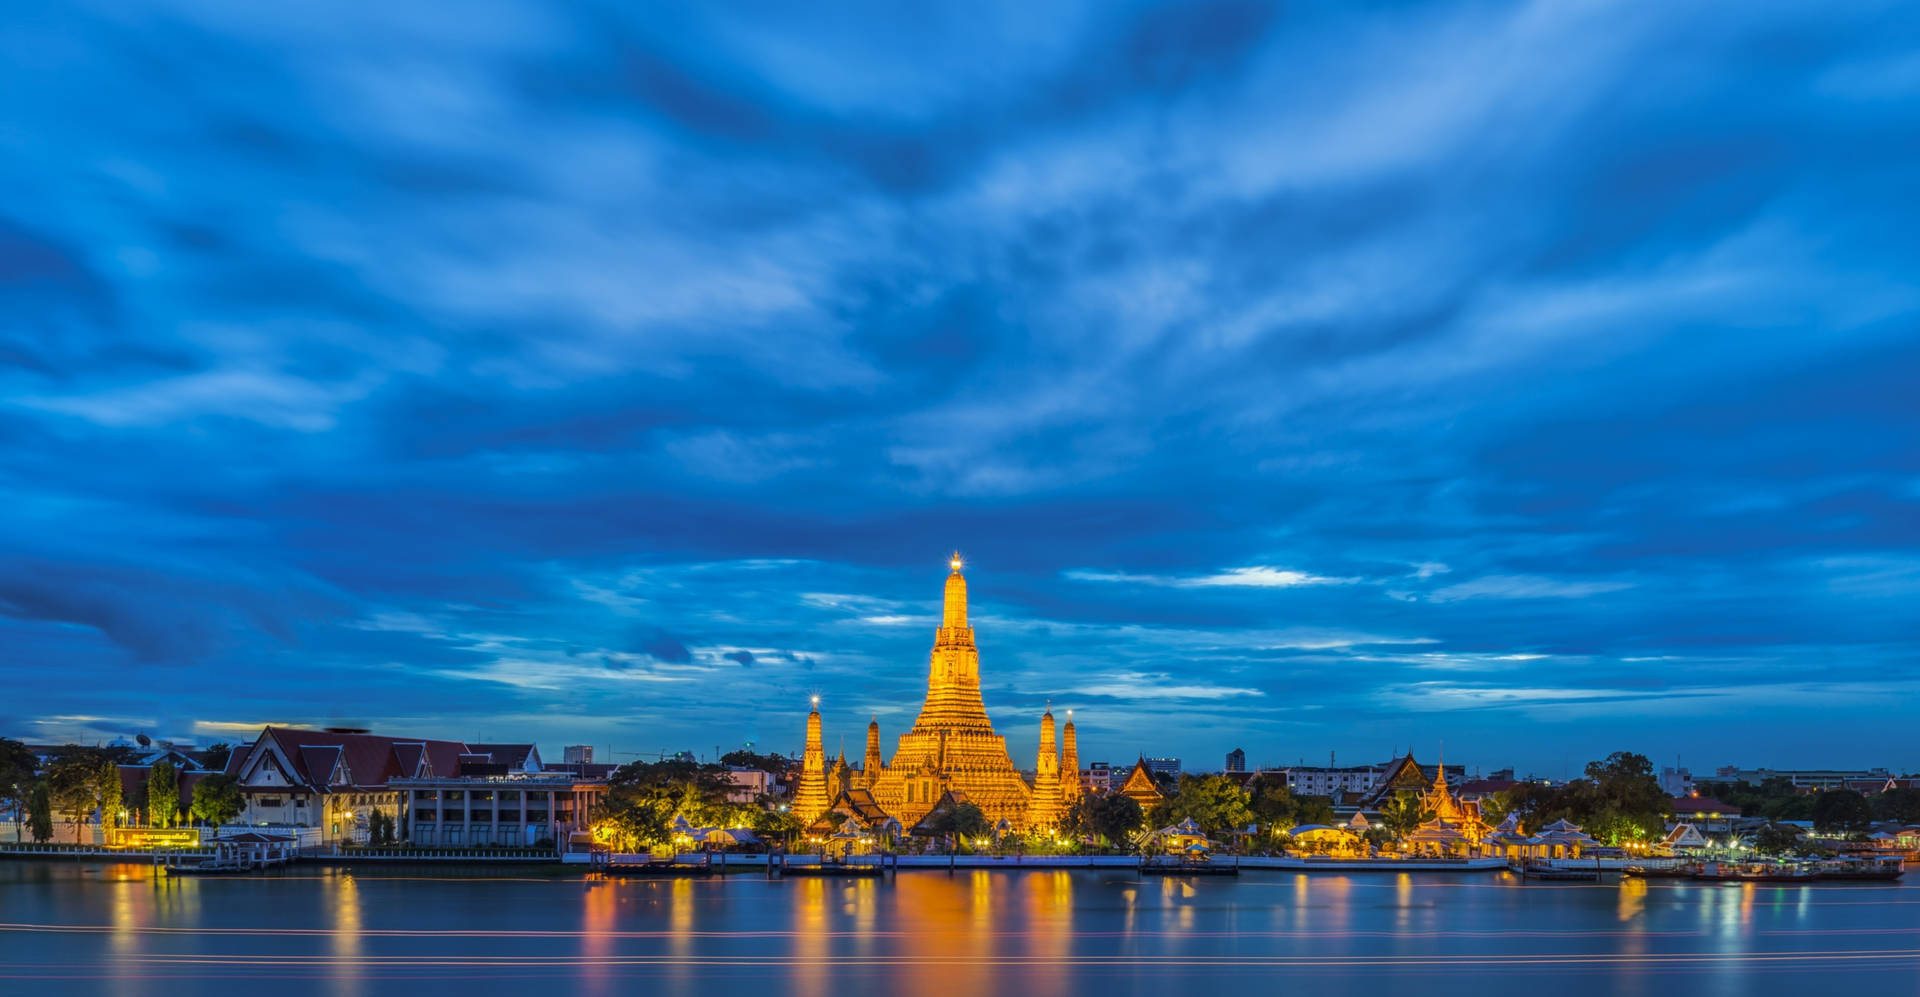 Der Chao Phraya Fluss In Thailand Kann Eine Schöne Option Für Deinen Computer- Oder Mobiltelefon-hintergrund Sein. Wallpaper